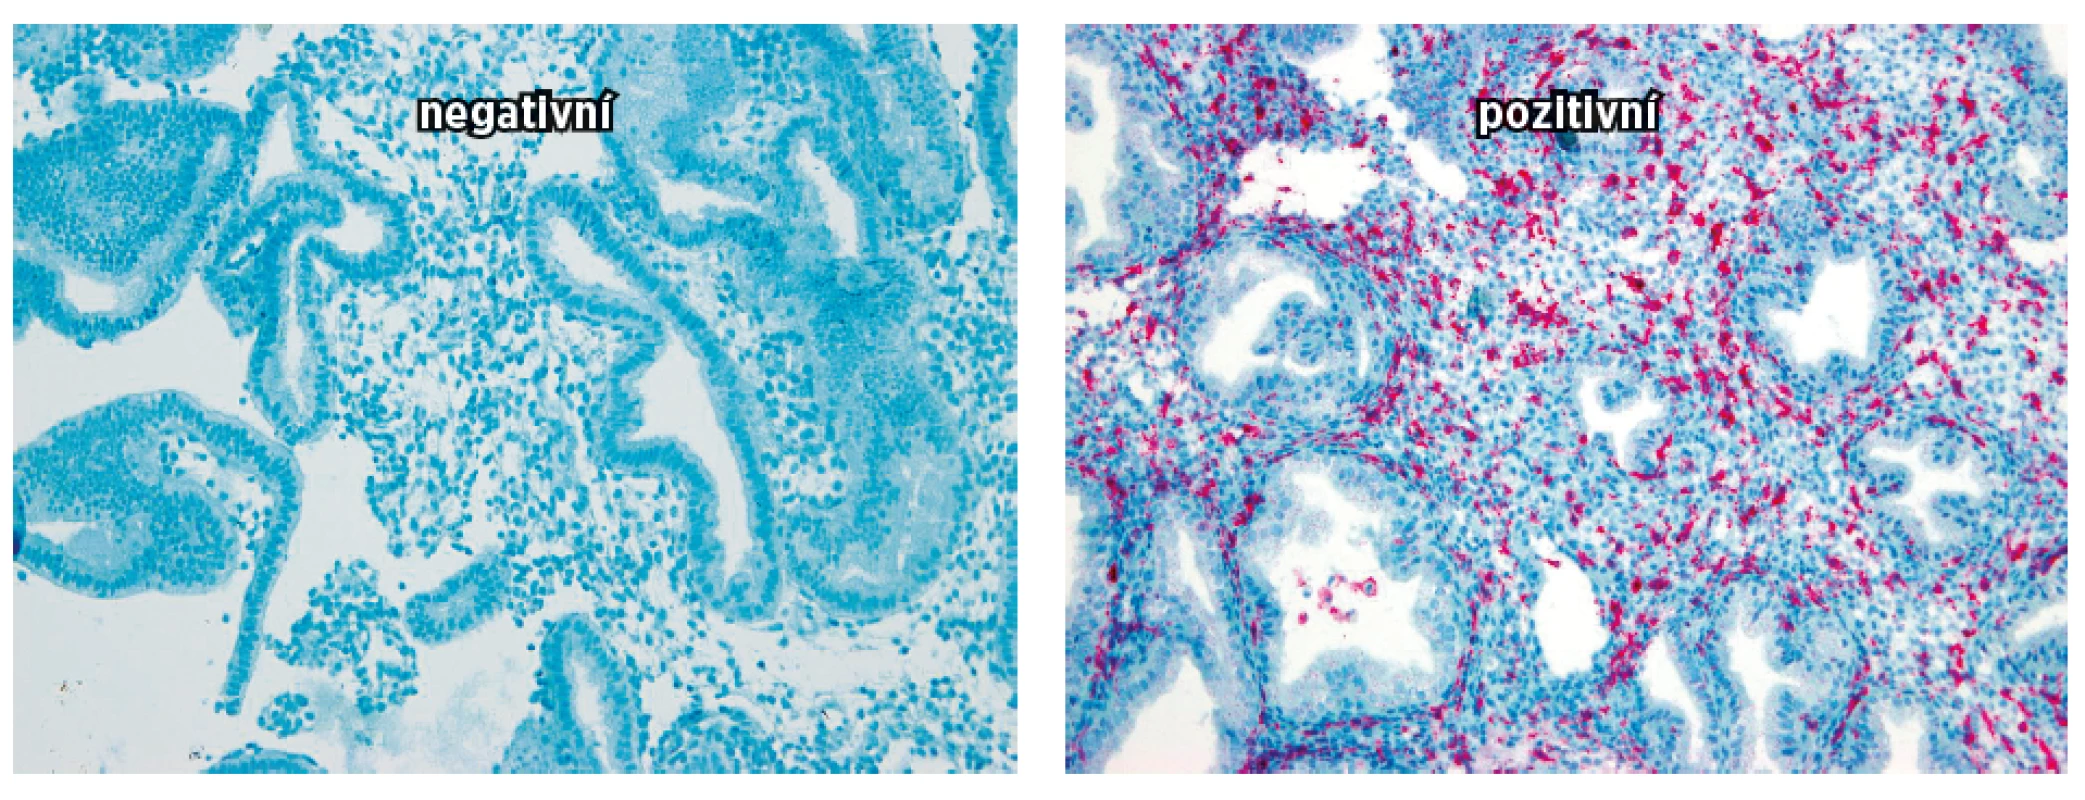 Na obrázku jsou vyjádřeny denzity endometriálních NK buněk CD 16 negativní a pozitivních